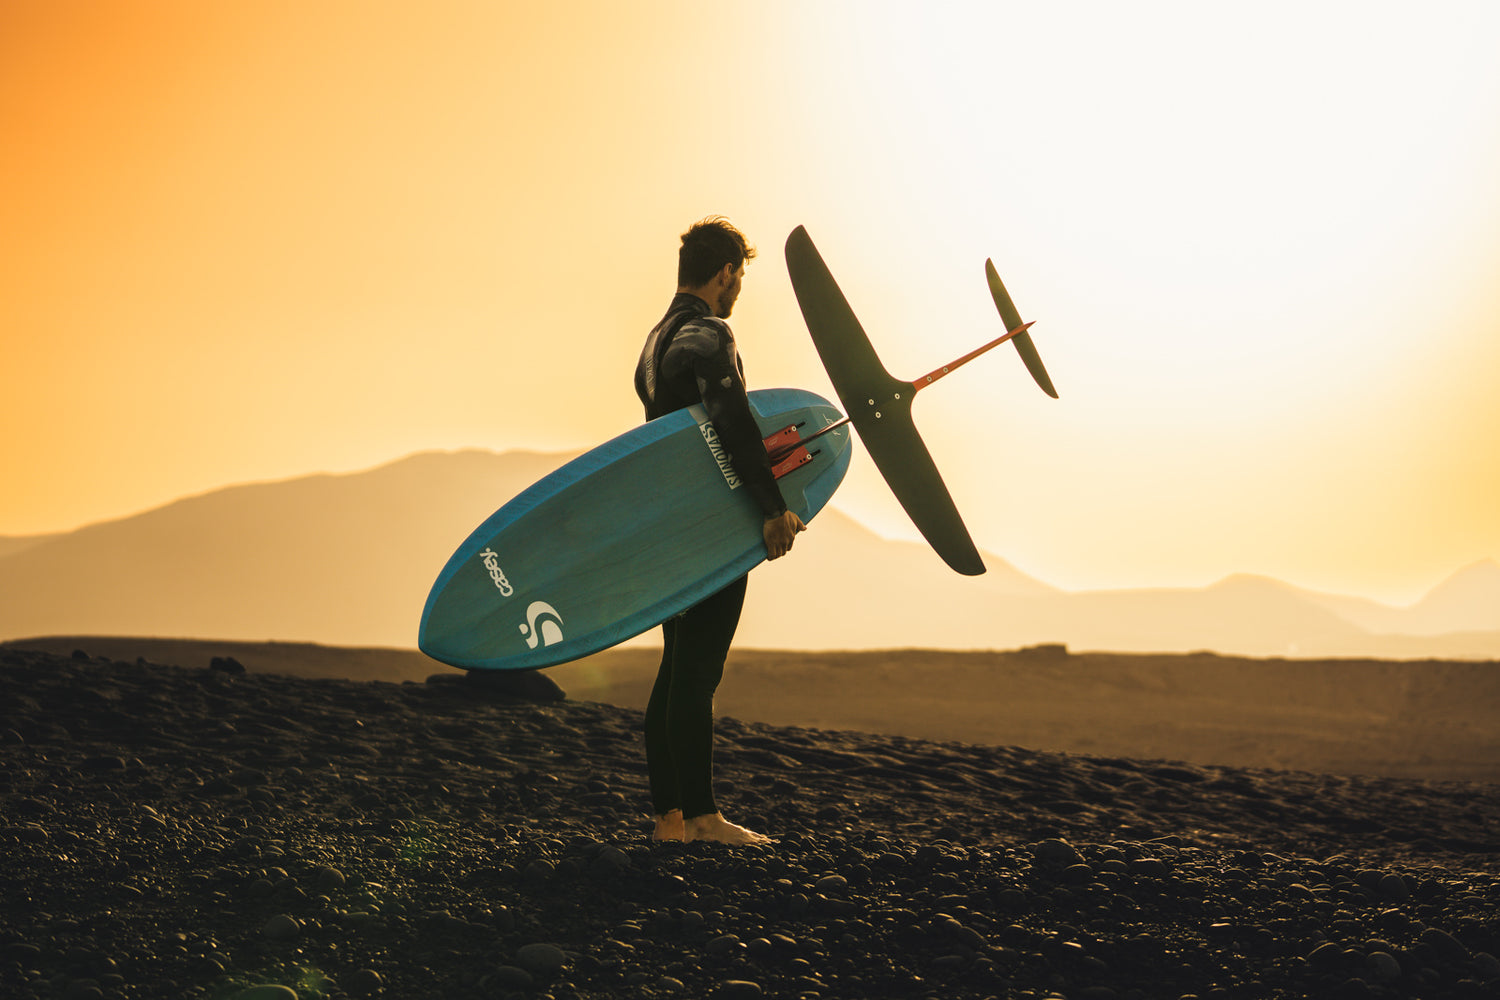 Prone Foiler Kai-Nicolas Steimer am Strand im Sonnenuntergang mit dem Sunova Casey Pilot Surf Foil Board und einem Axis Foil Set up.